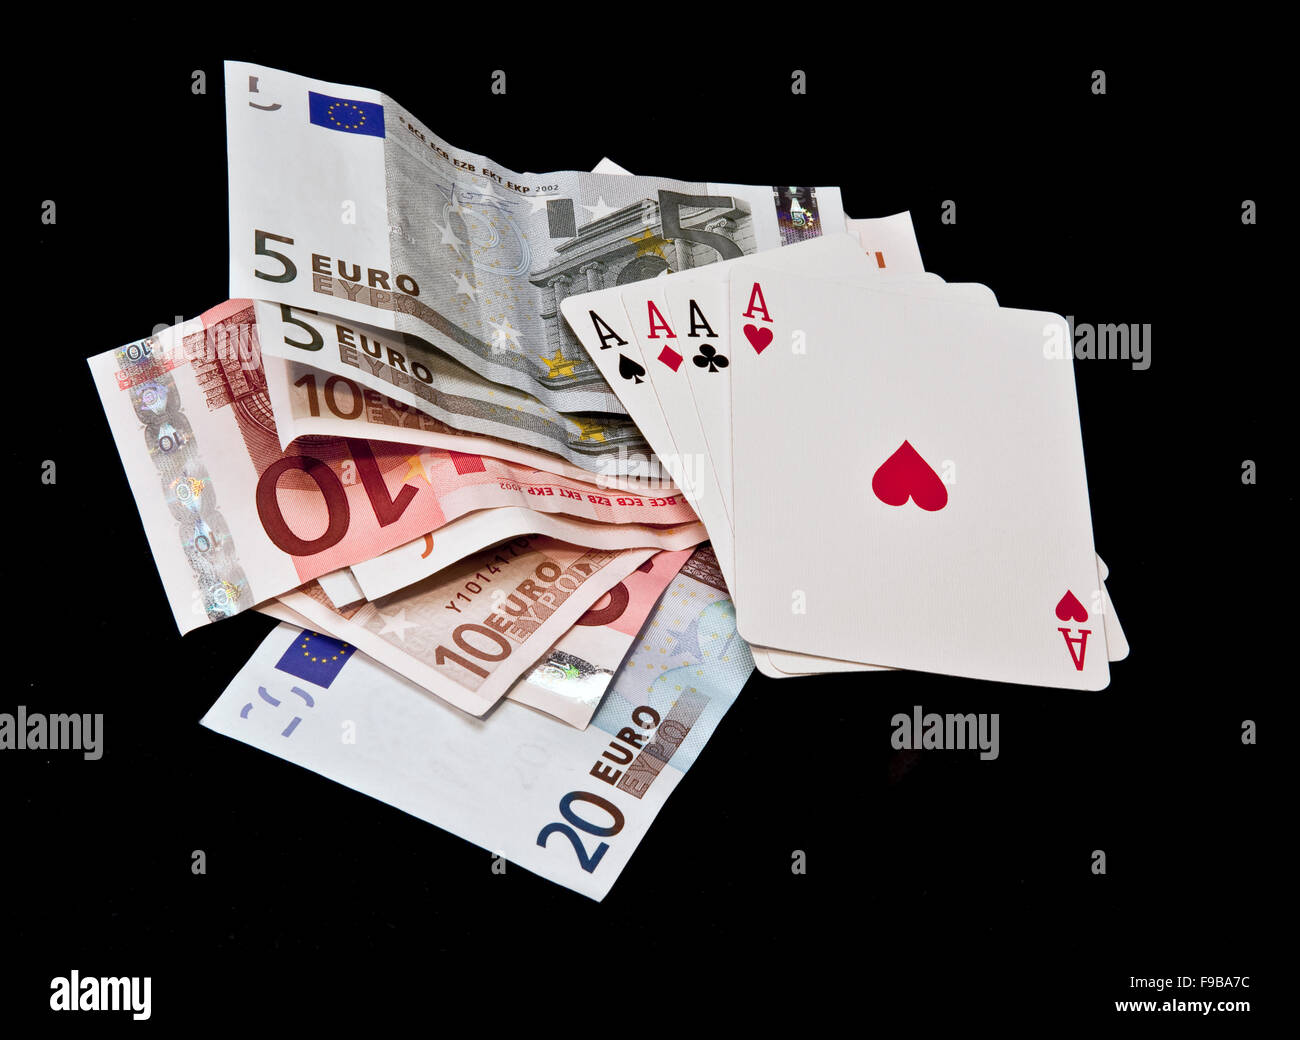 Euro Gamble Euro notes on a Black background Stock Photo